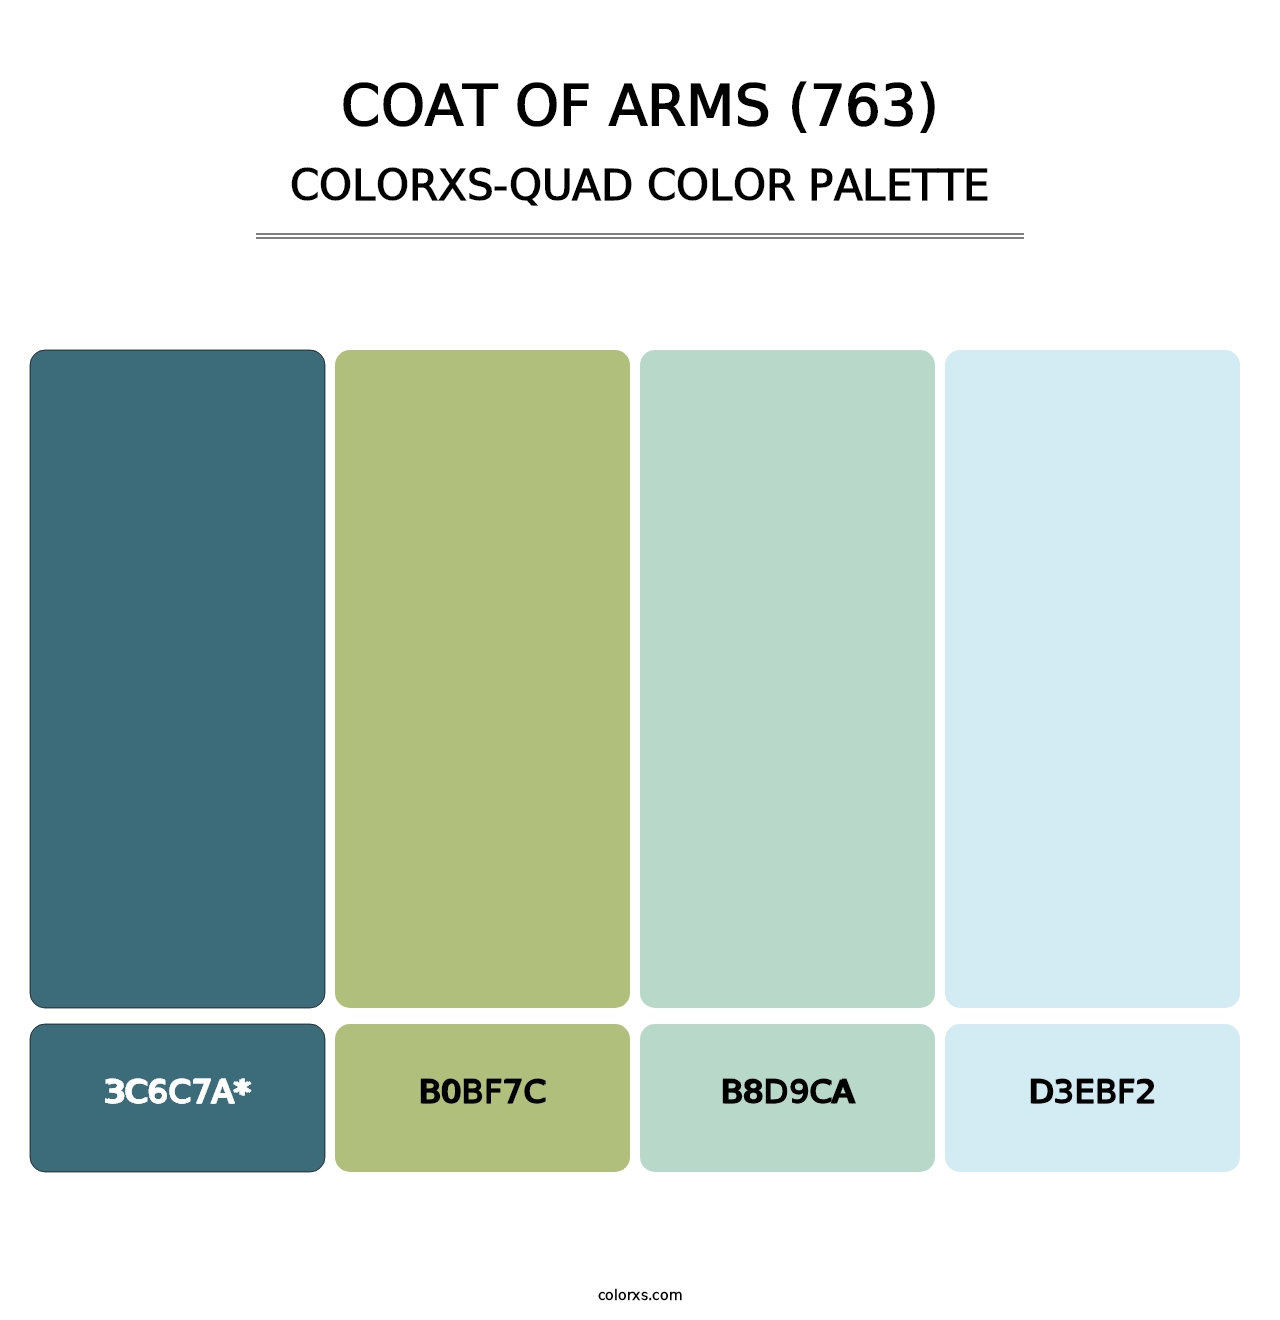 Coat of Arms (763) - Colorxs Quad Palette